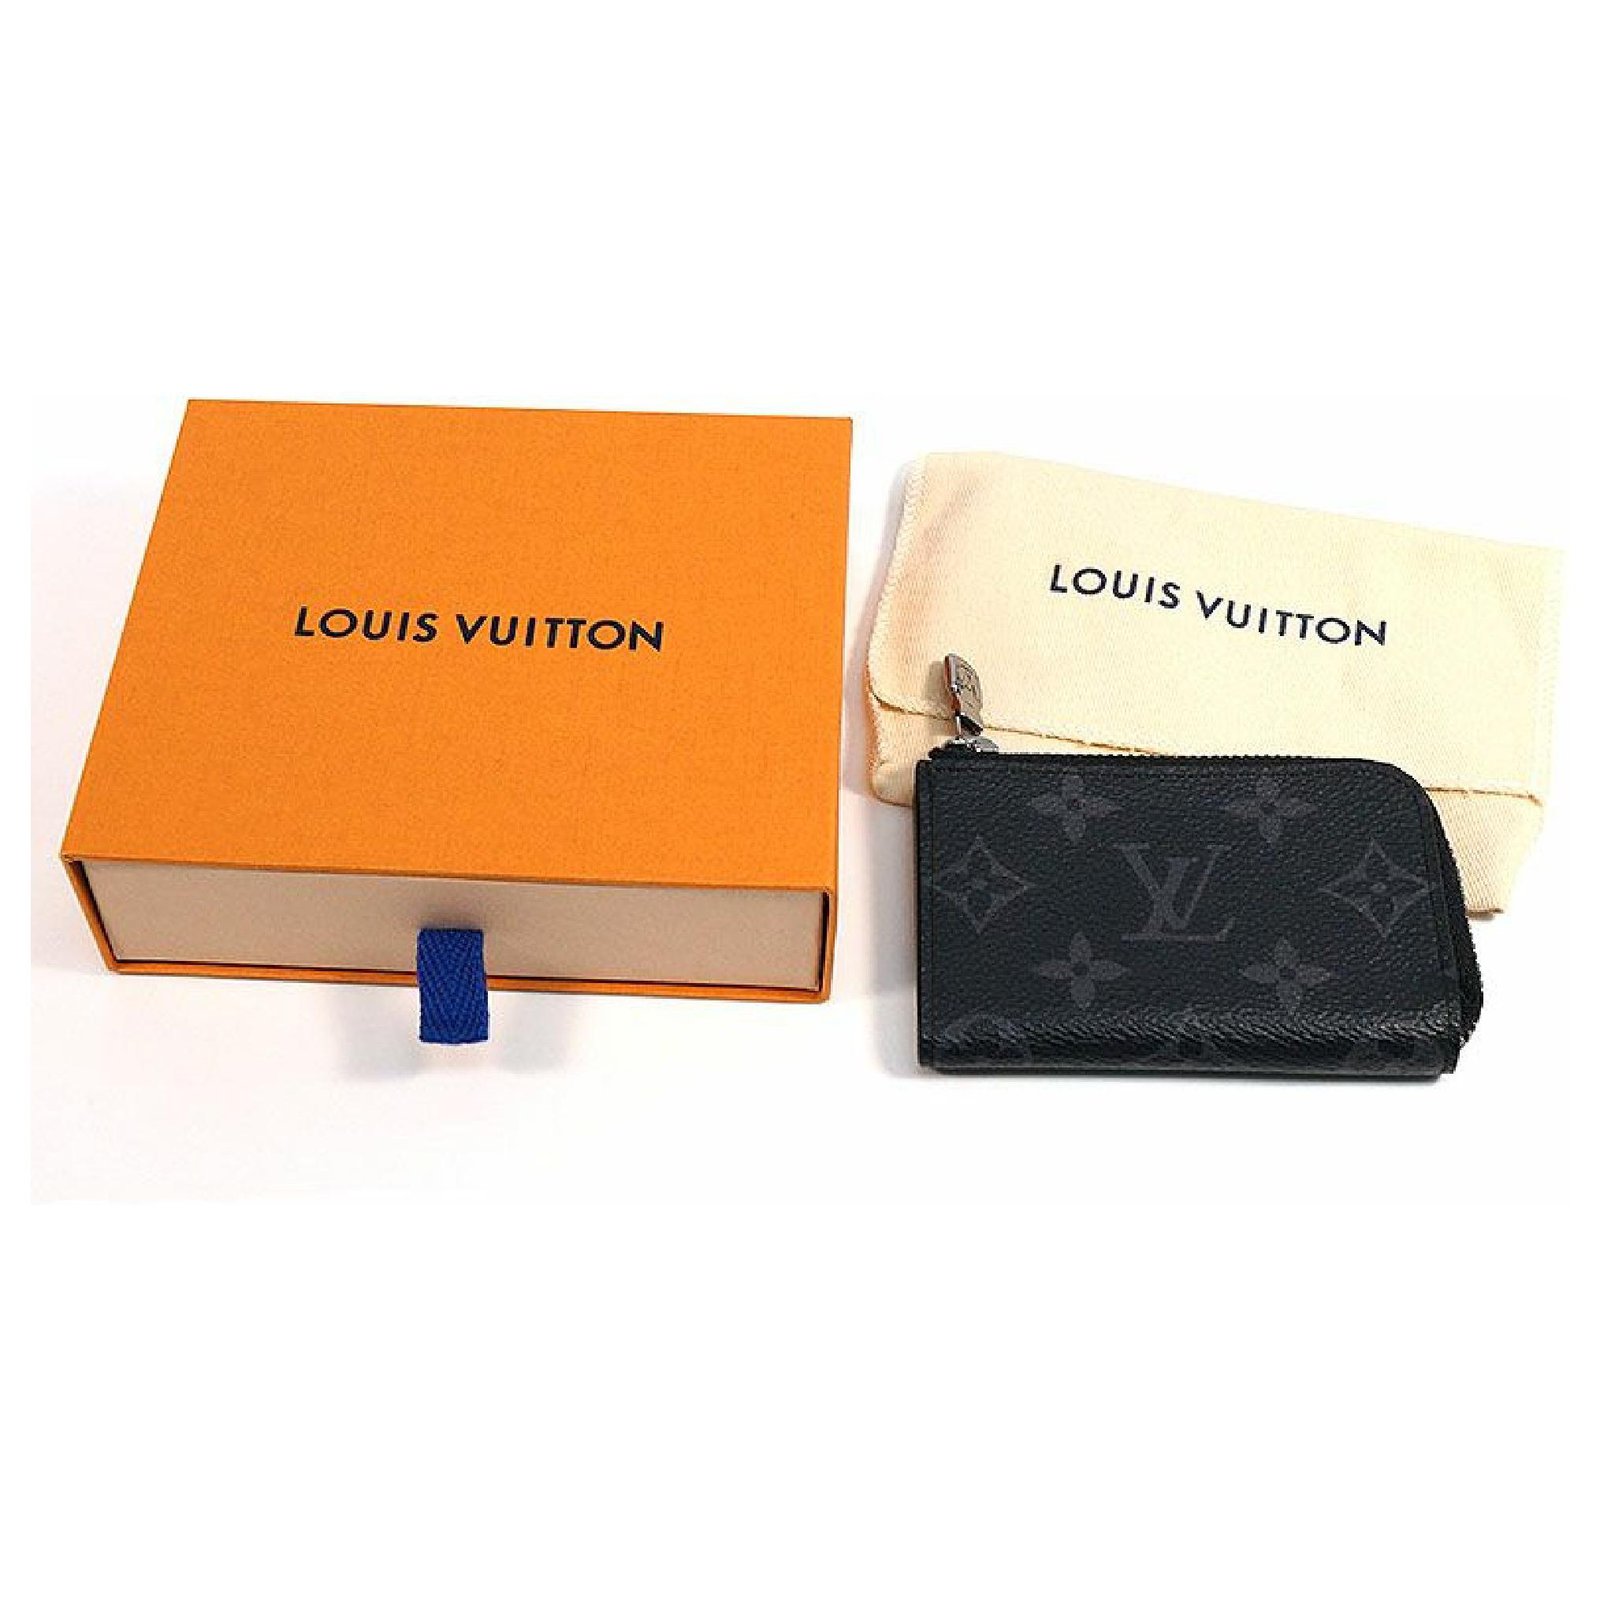 LOUIS VUITTON Porte Monnaie joule jour Coin case wallet M63536